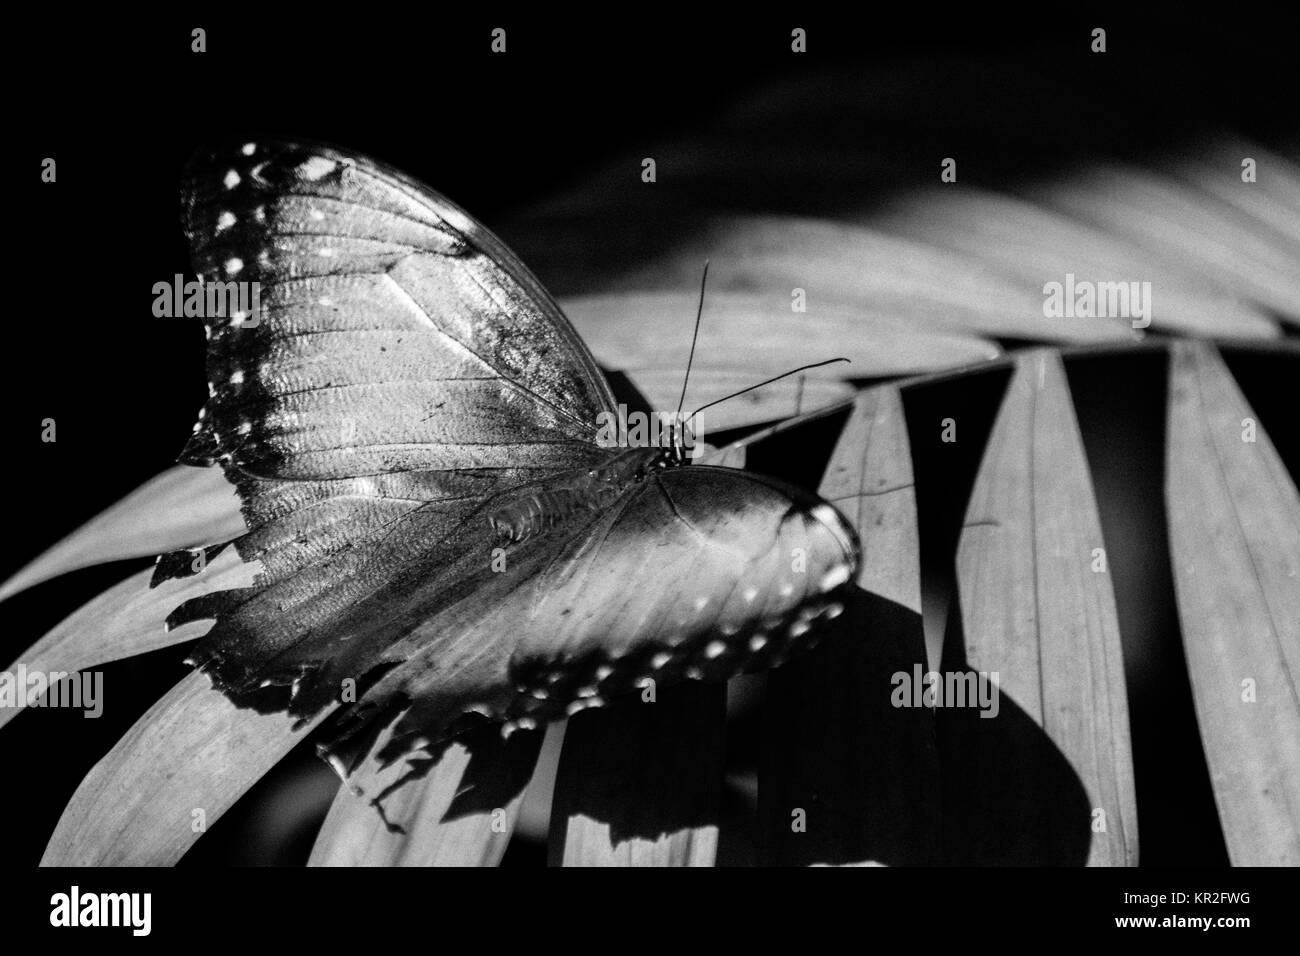 Un beau papillon perché dans une feuille en noir et blanc Banque D'Images